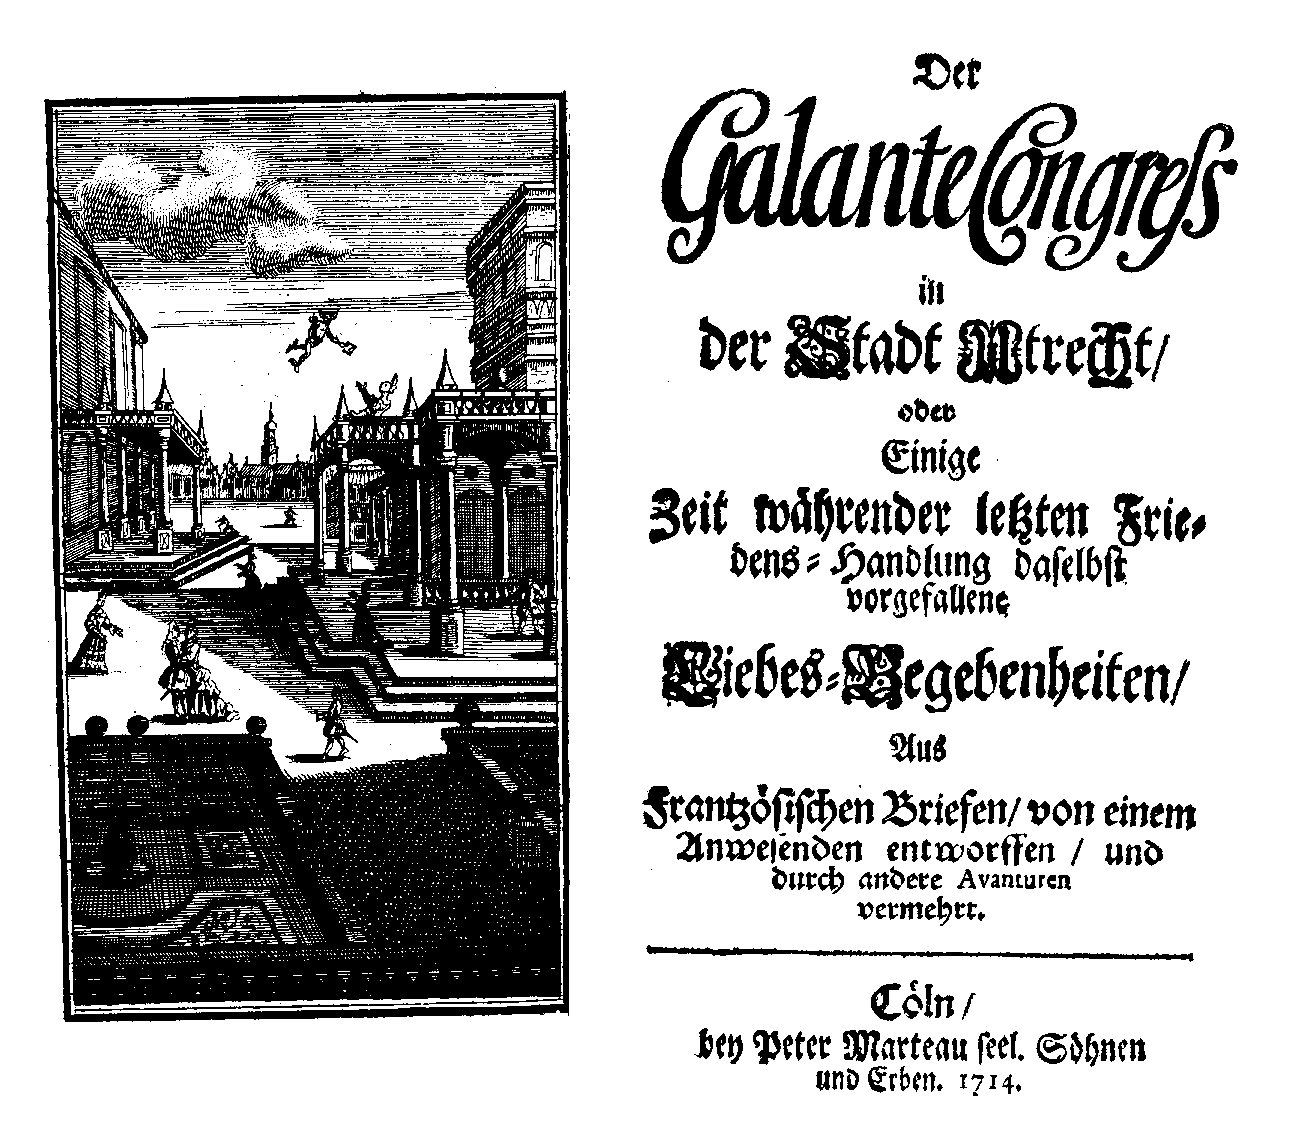 [Casimir Freschot,] Der galante Congress in der Stadt Utrecht (Cöln: bey Peter Marteau seel. Söhnen und Erben, 1714).